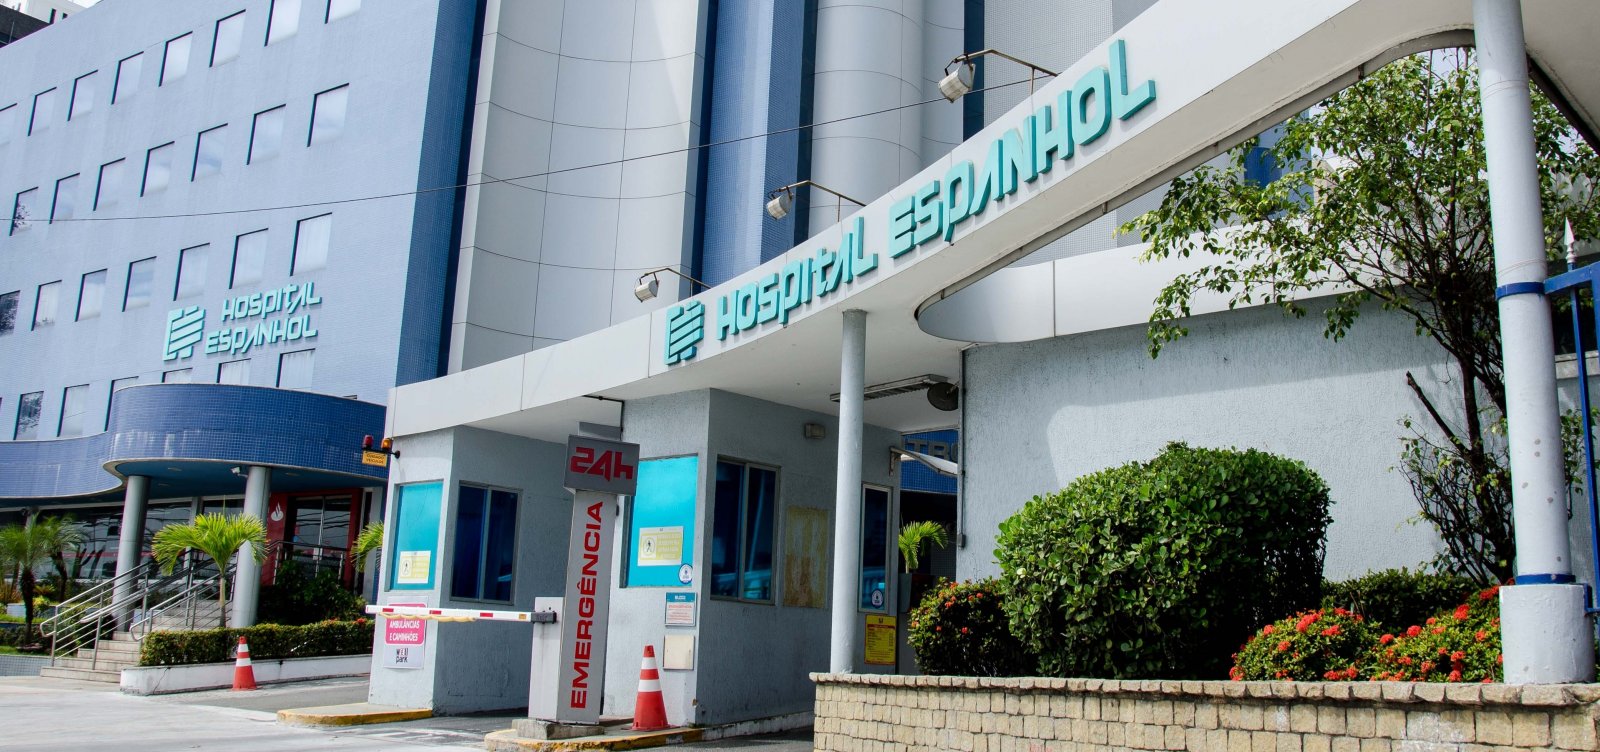 Governo entra com ação de desapropriação do Hospital Espanhol